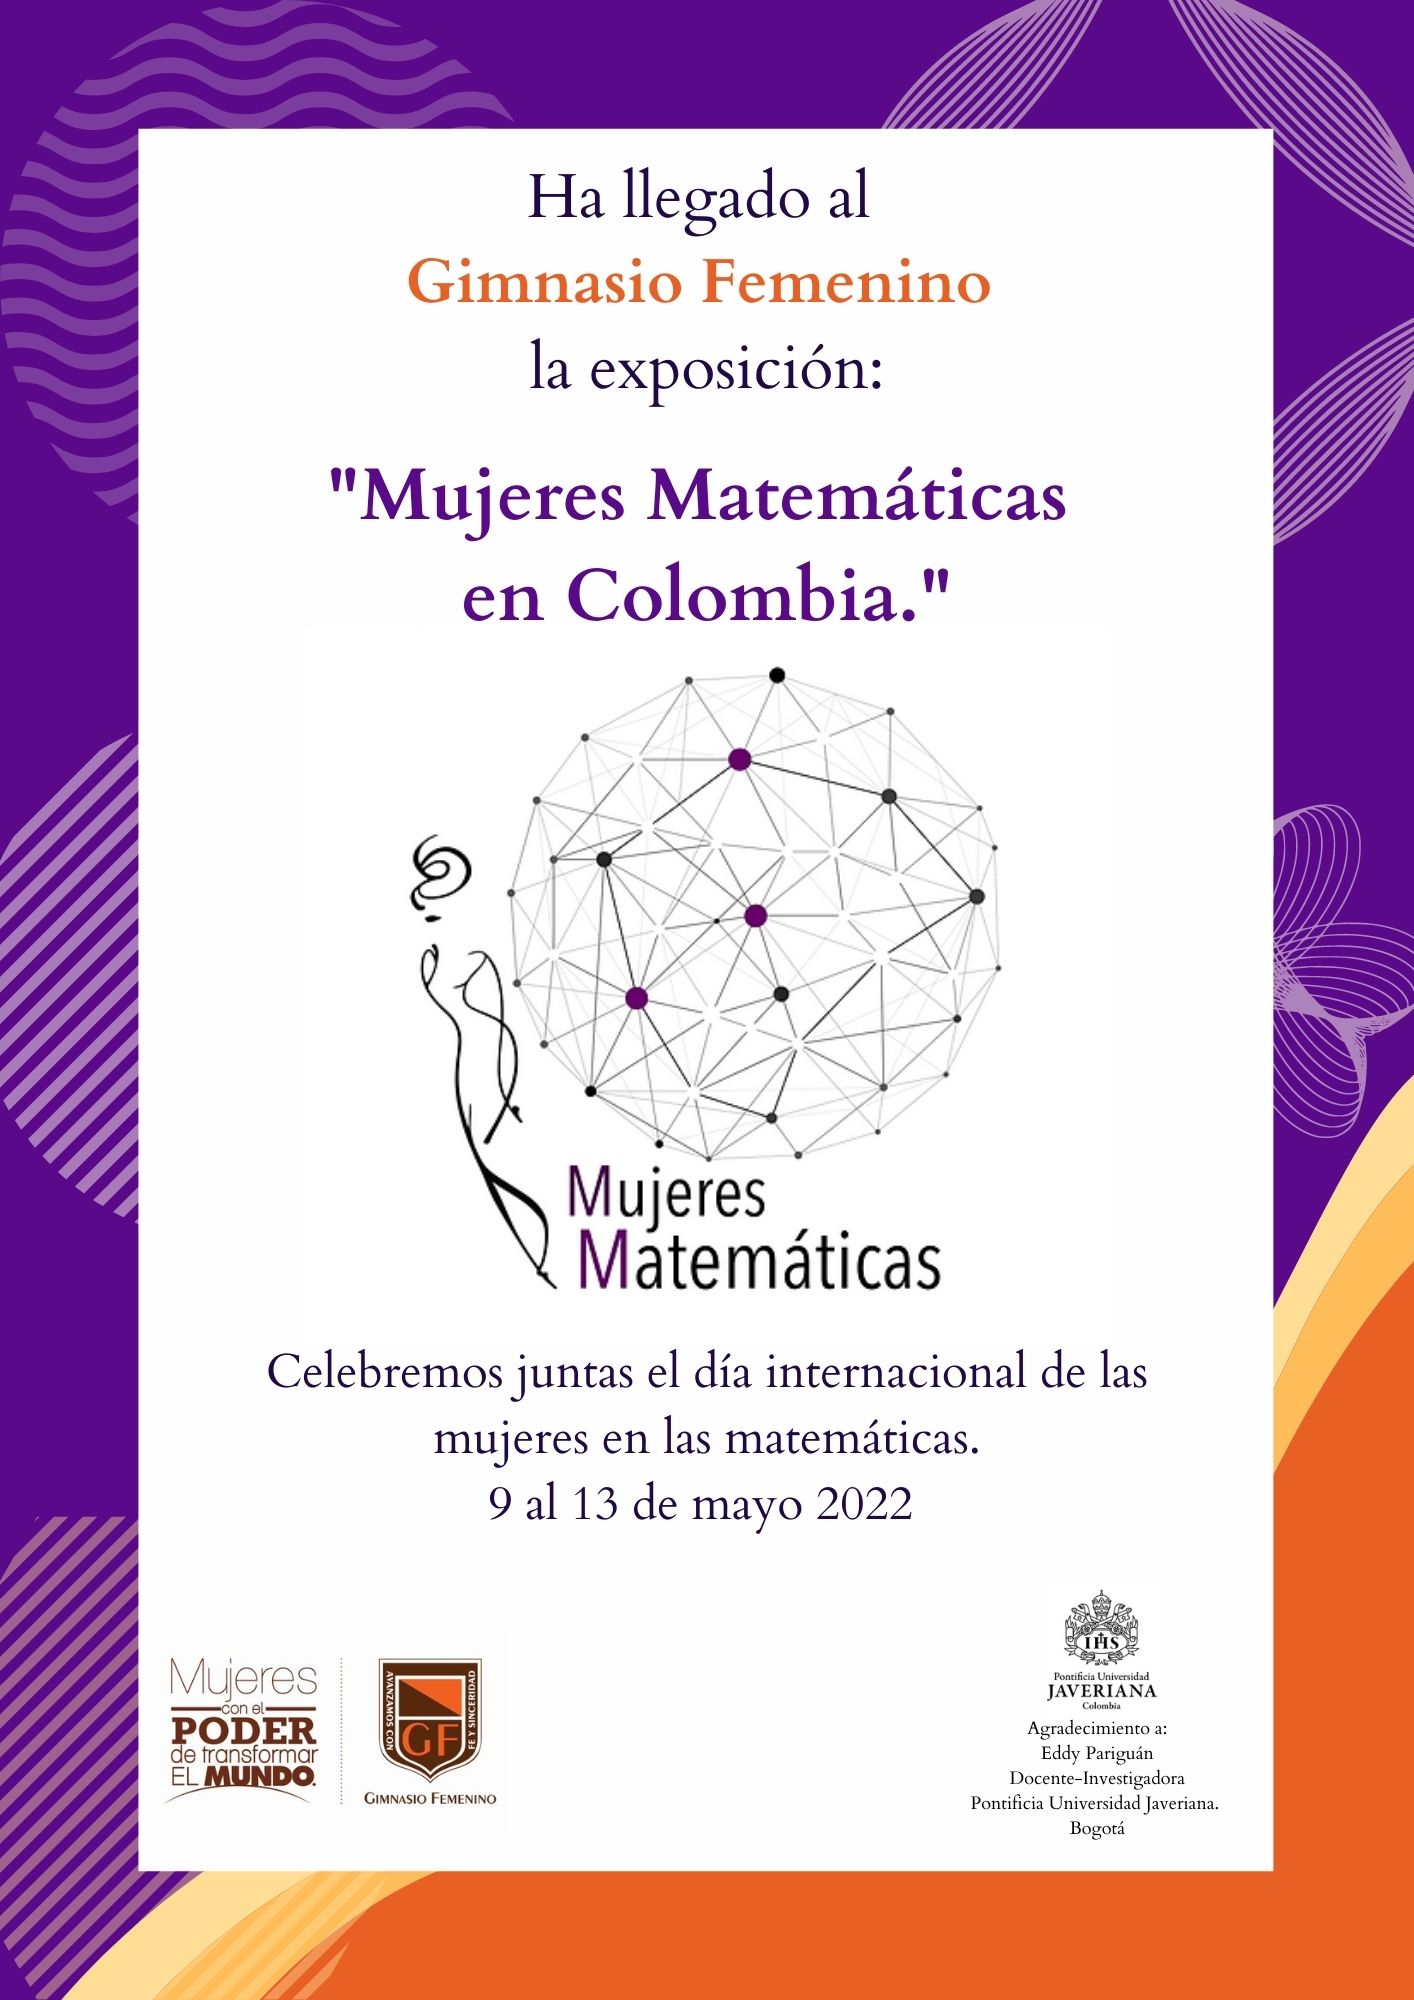 Invitación a la exposición "Mujeres matemáticas en Colombia".